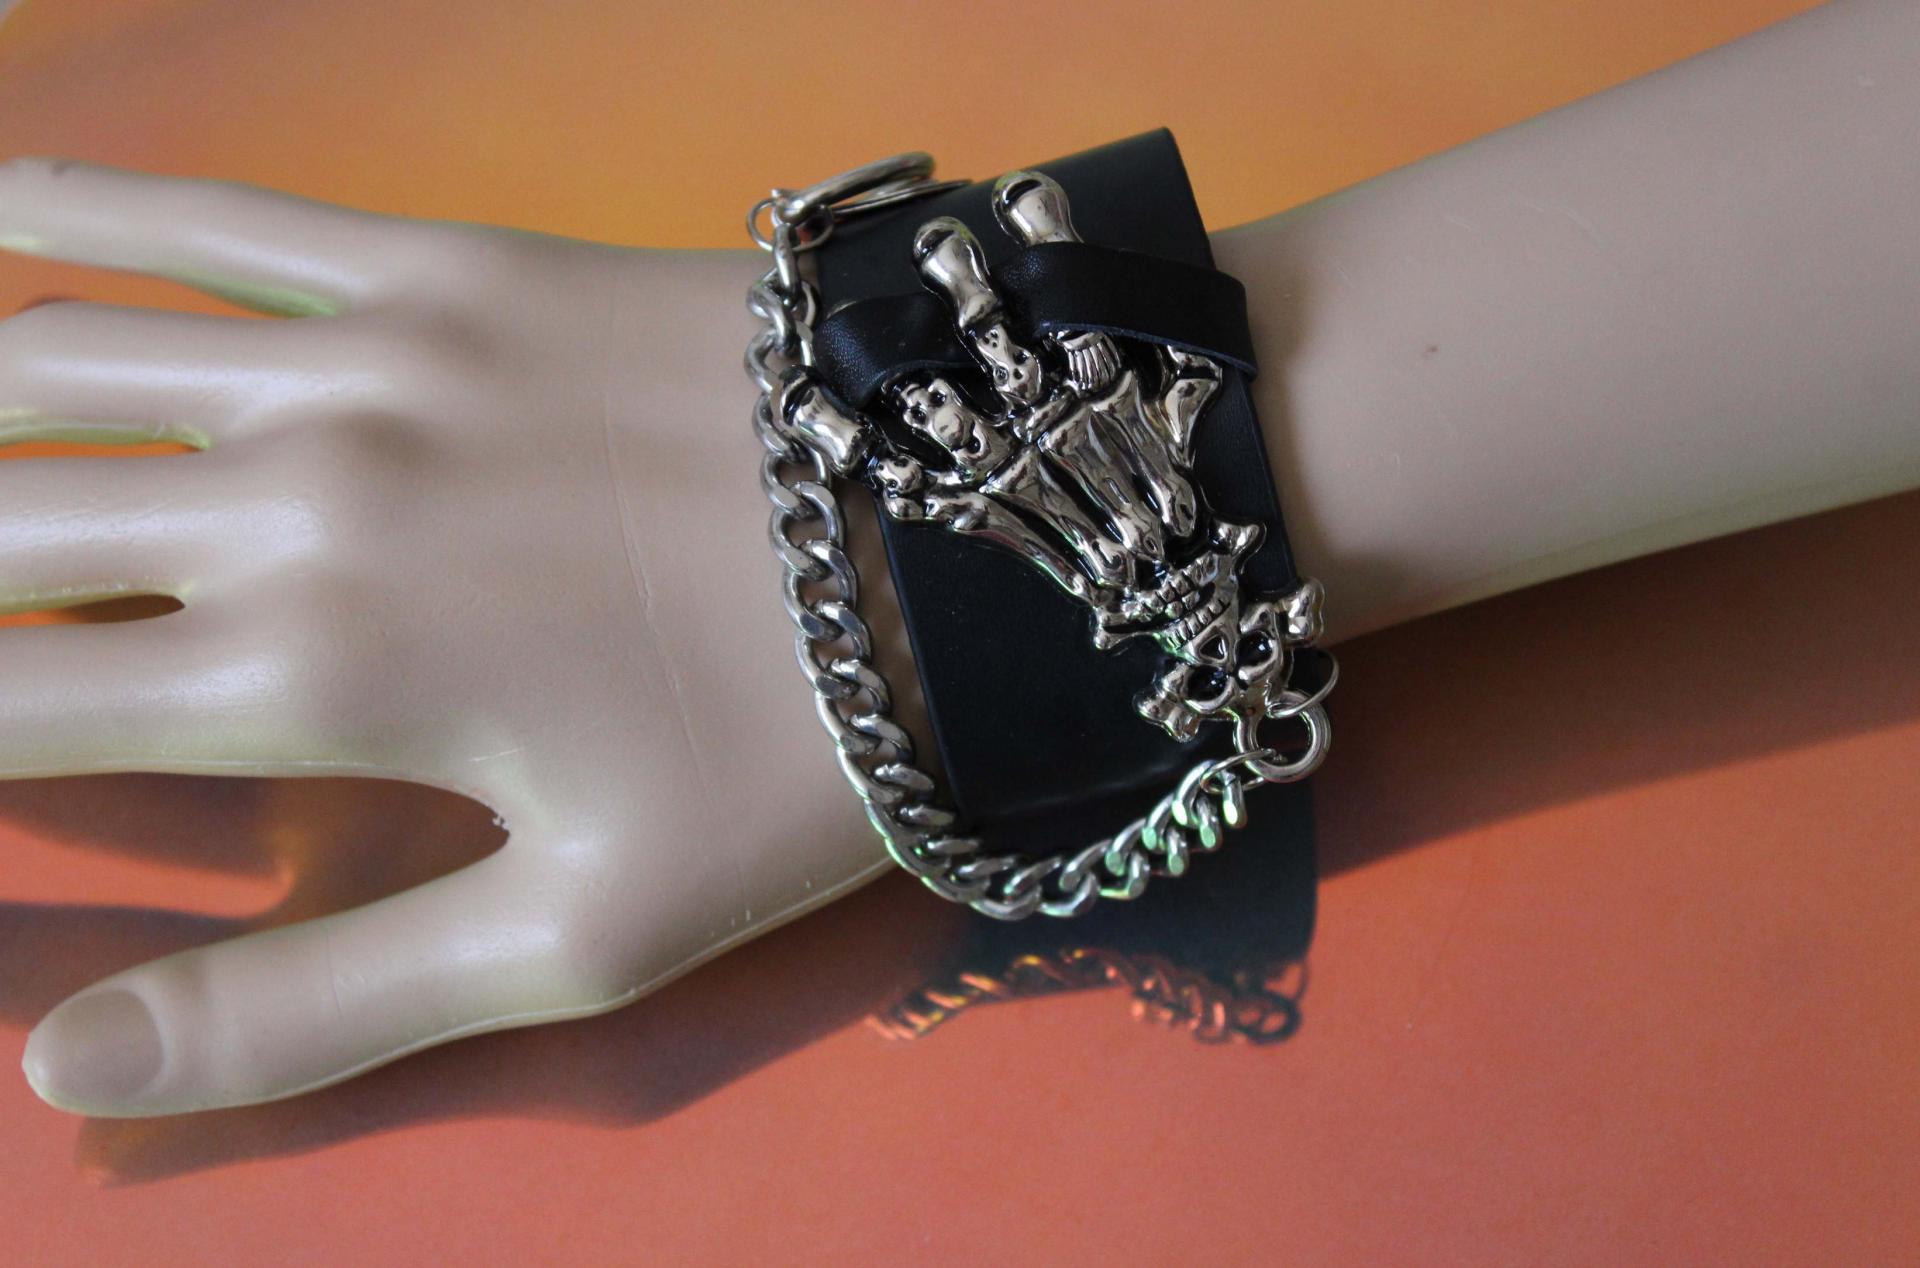 Punk Skeleton Hand Leather Bracelet